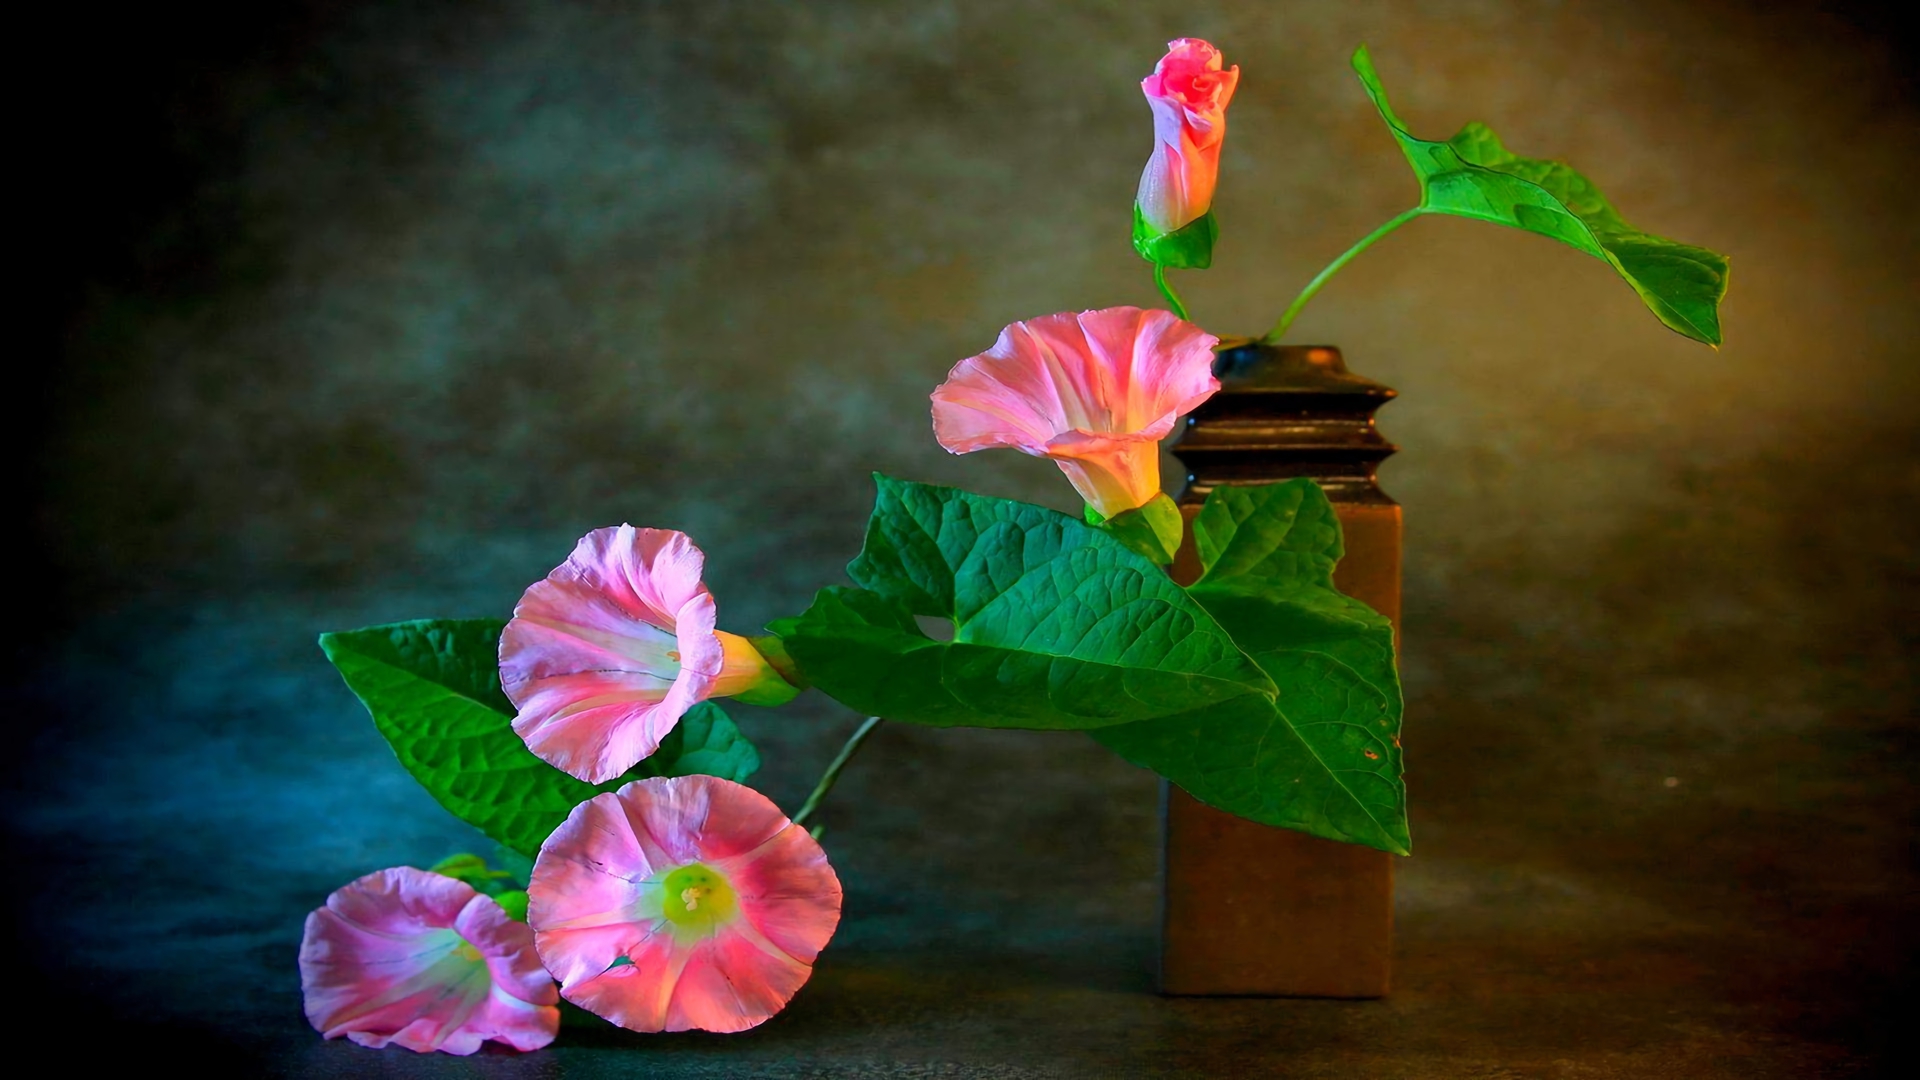 Earth Flower Morning Glory Vase Pink Flower 1920x1080